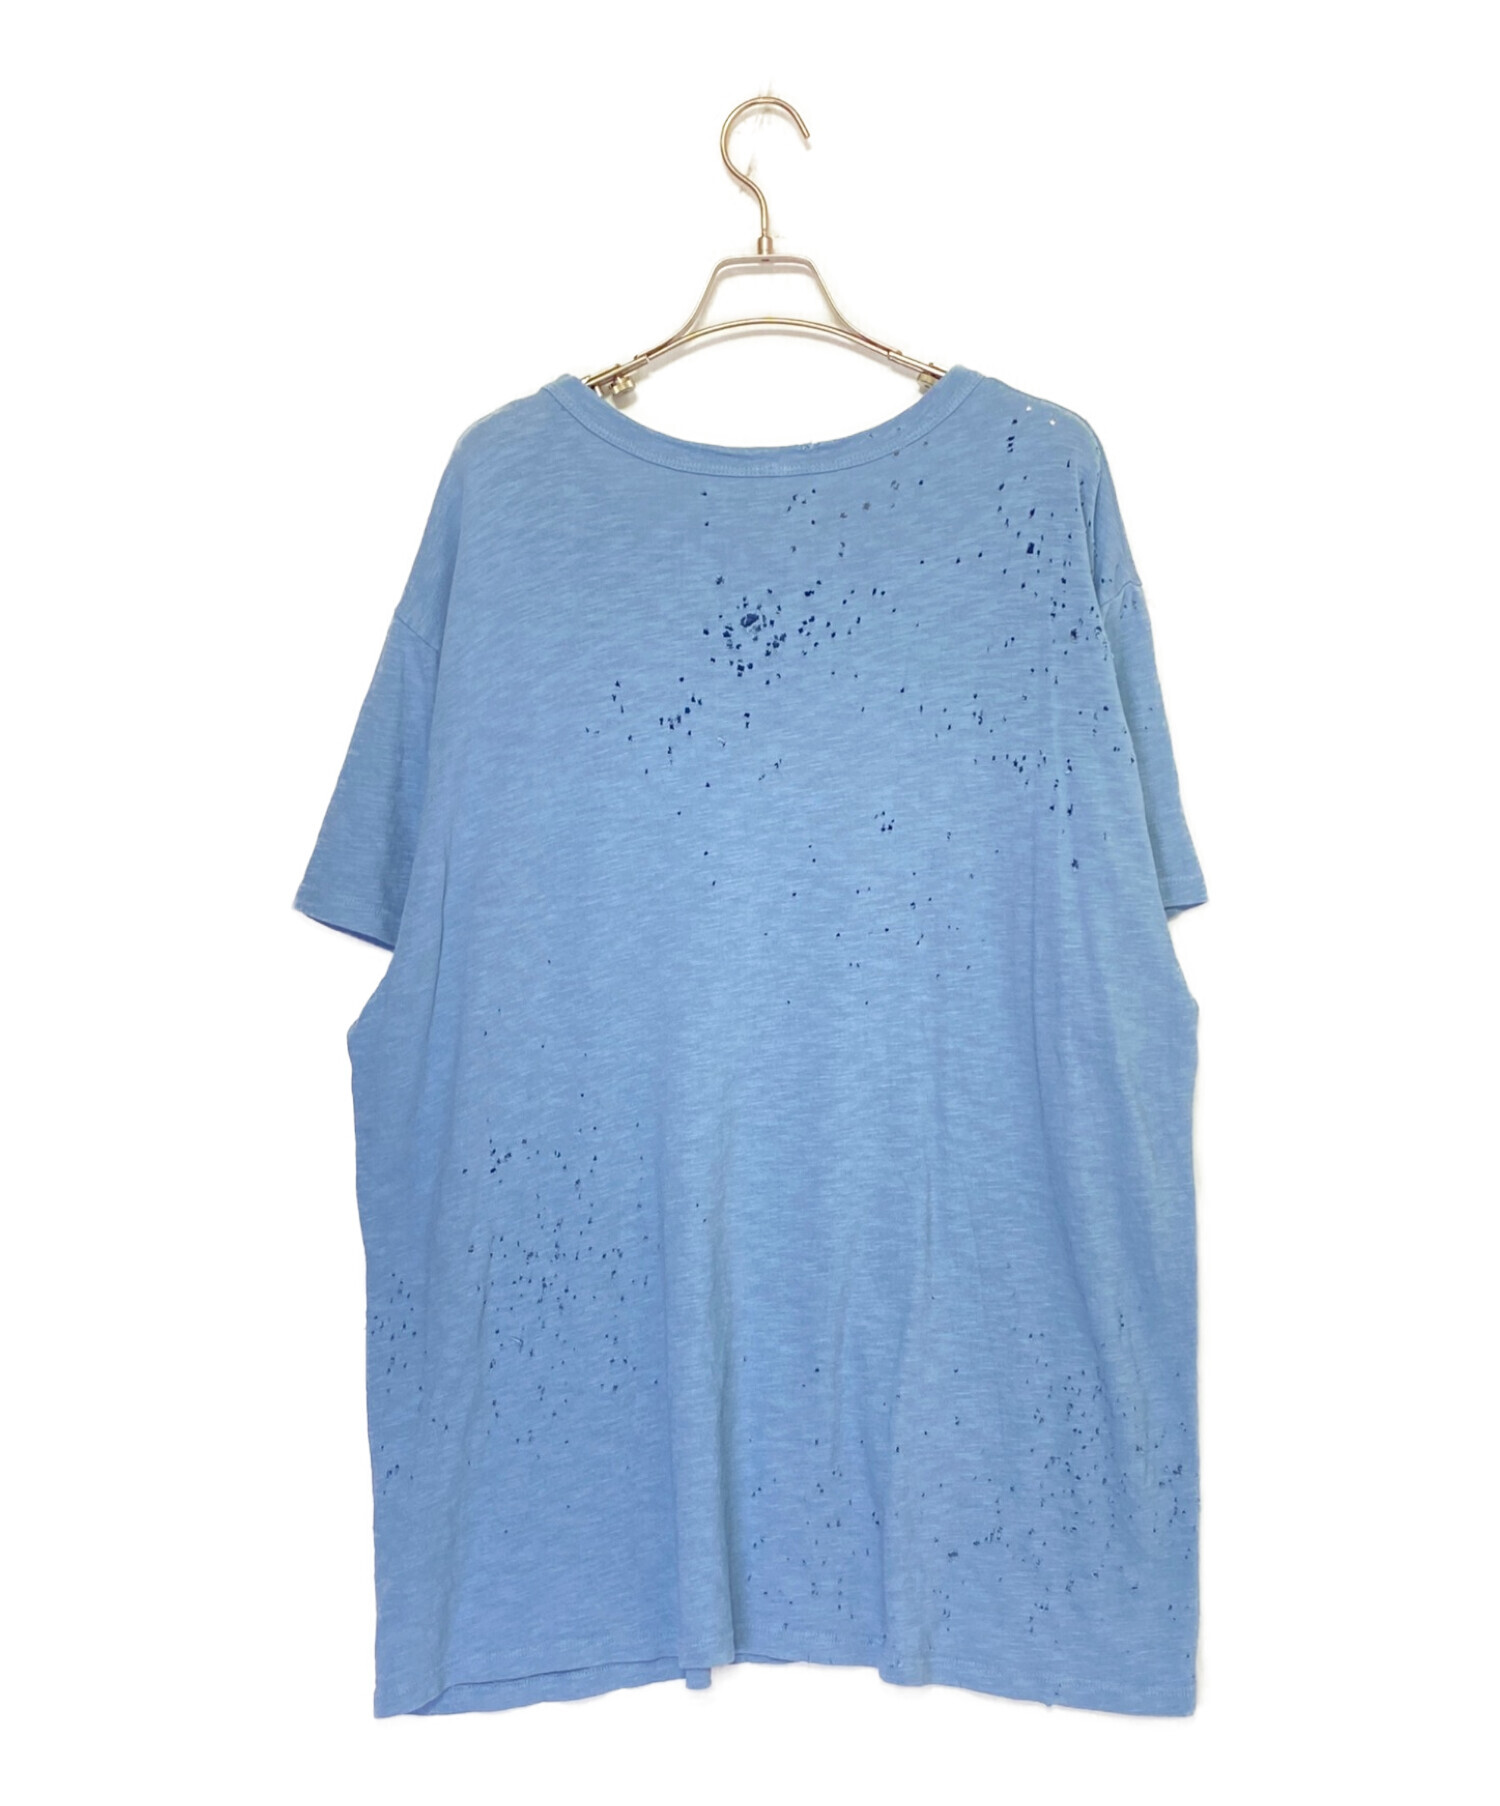 AMIRI (アミリ) ショットガンダメージ加工Tシャツ ライトブルー サイズ:XL